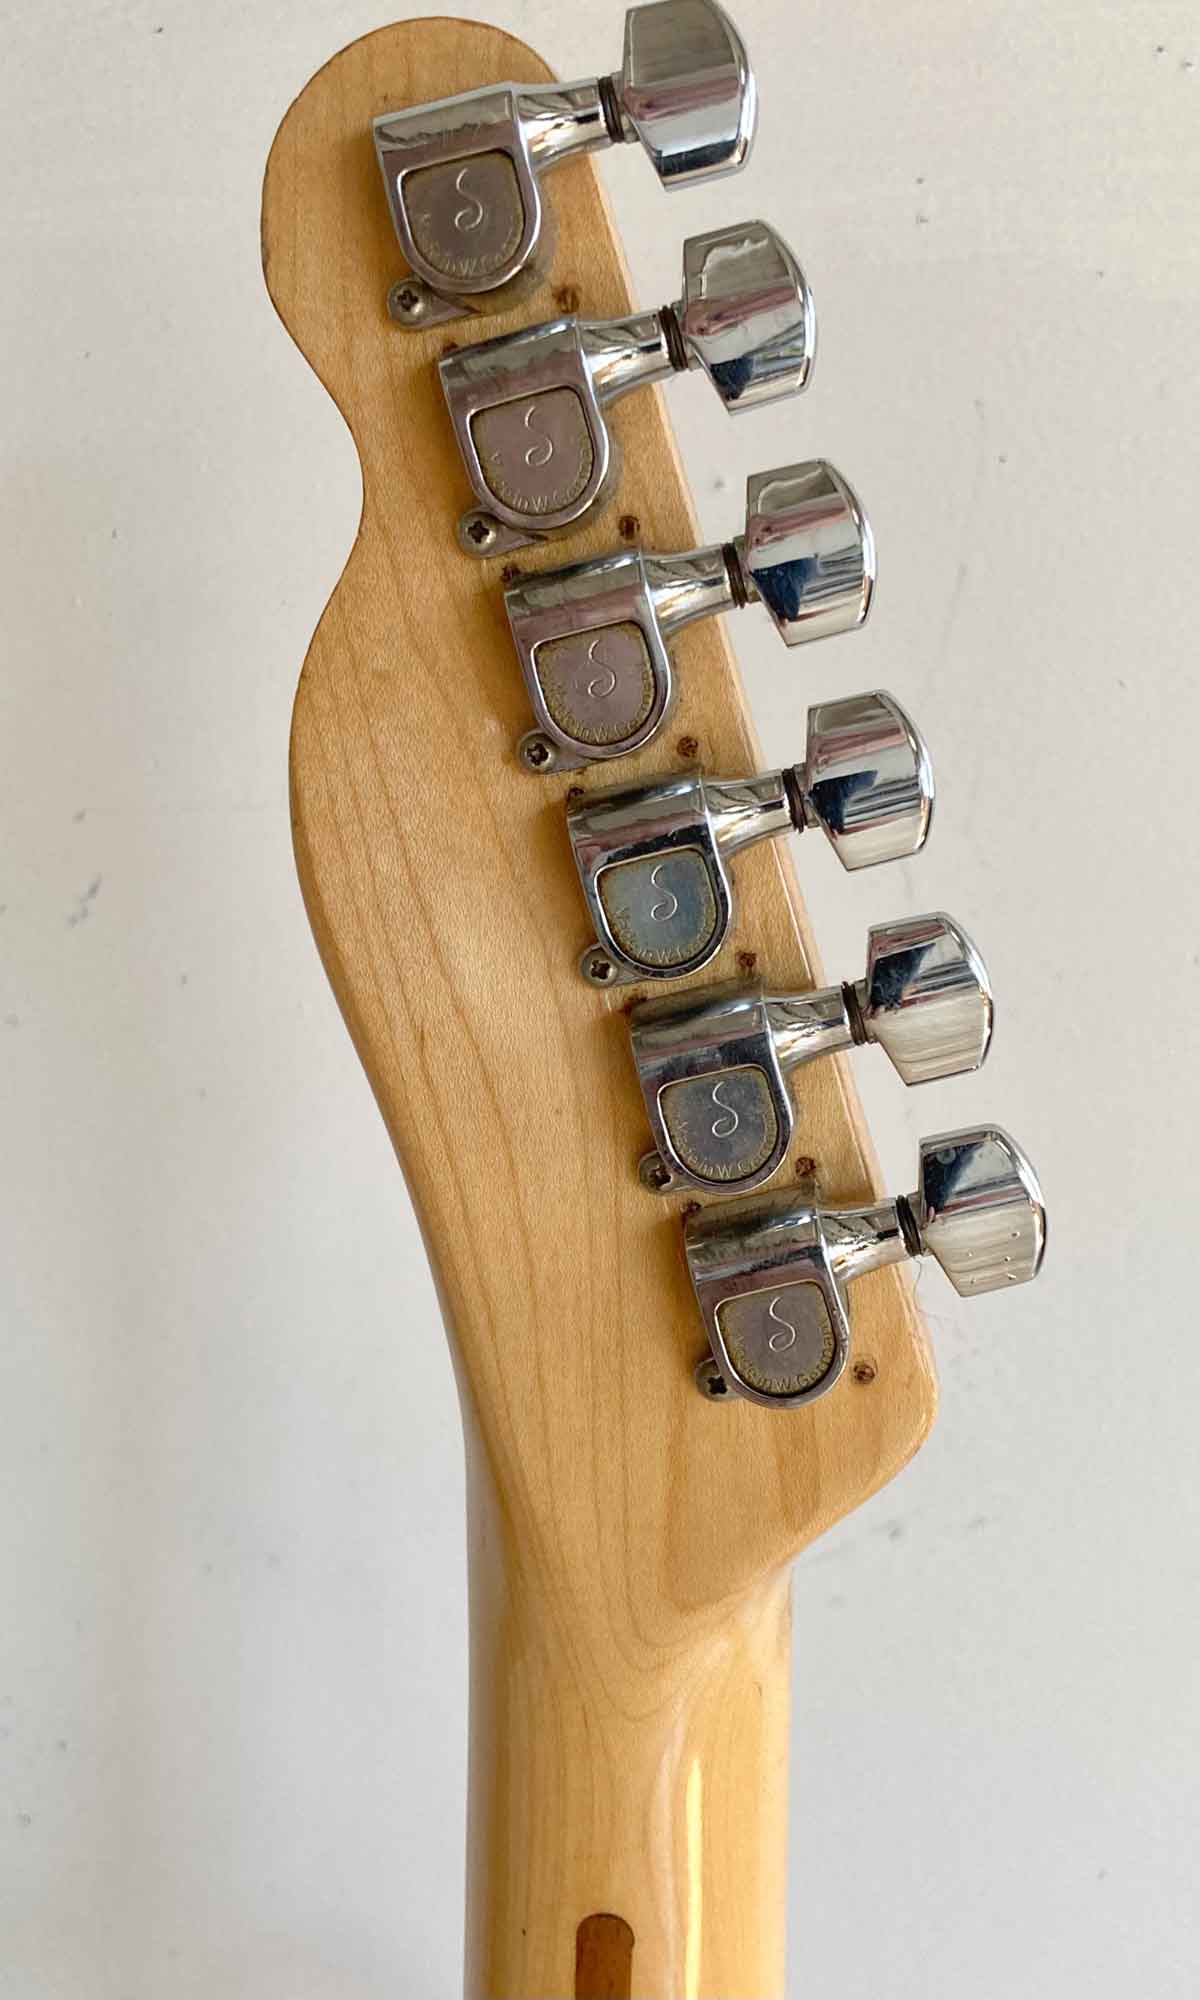 Fender Telecaster Thinline 1974